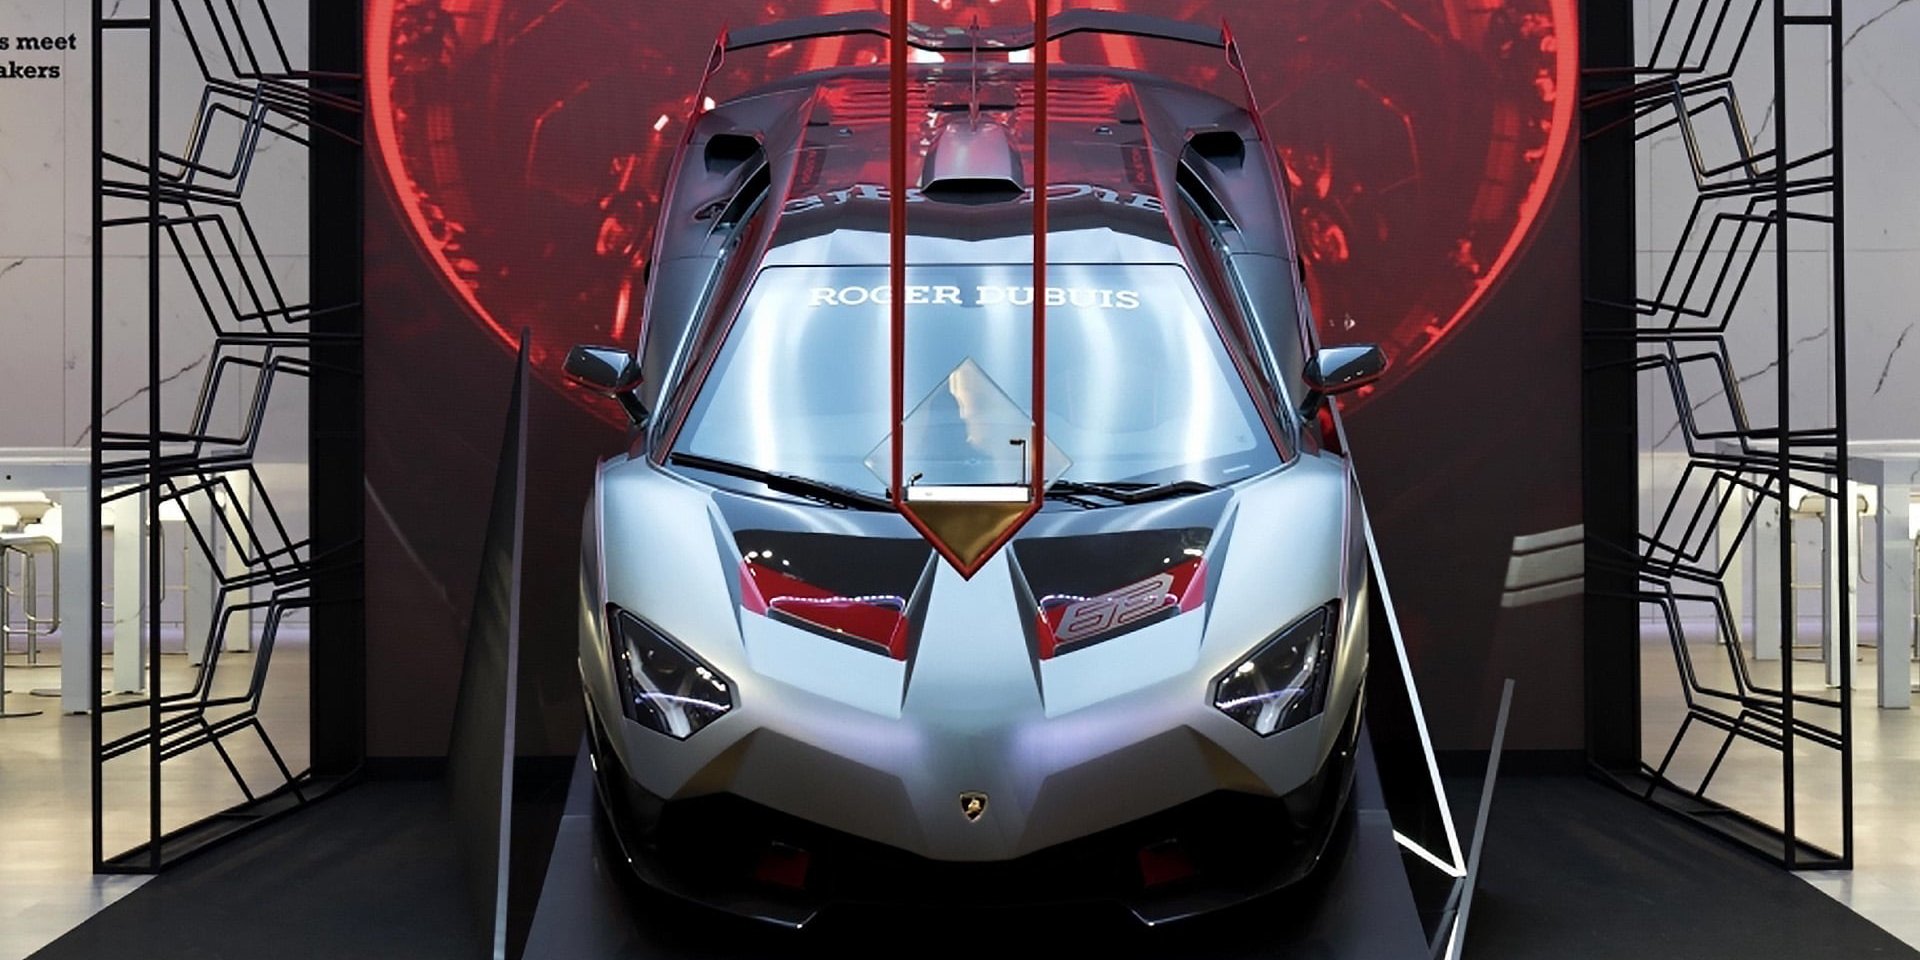 Image 1 Roger Dubuis SIHH 2019 - Lamborghini